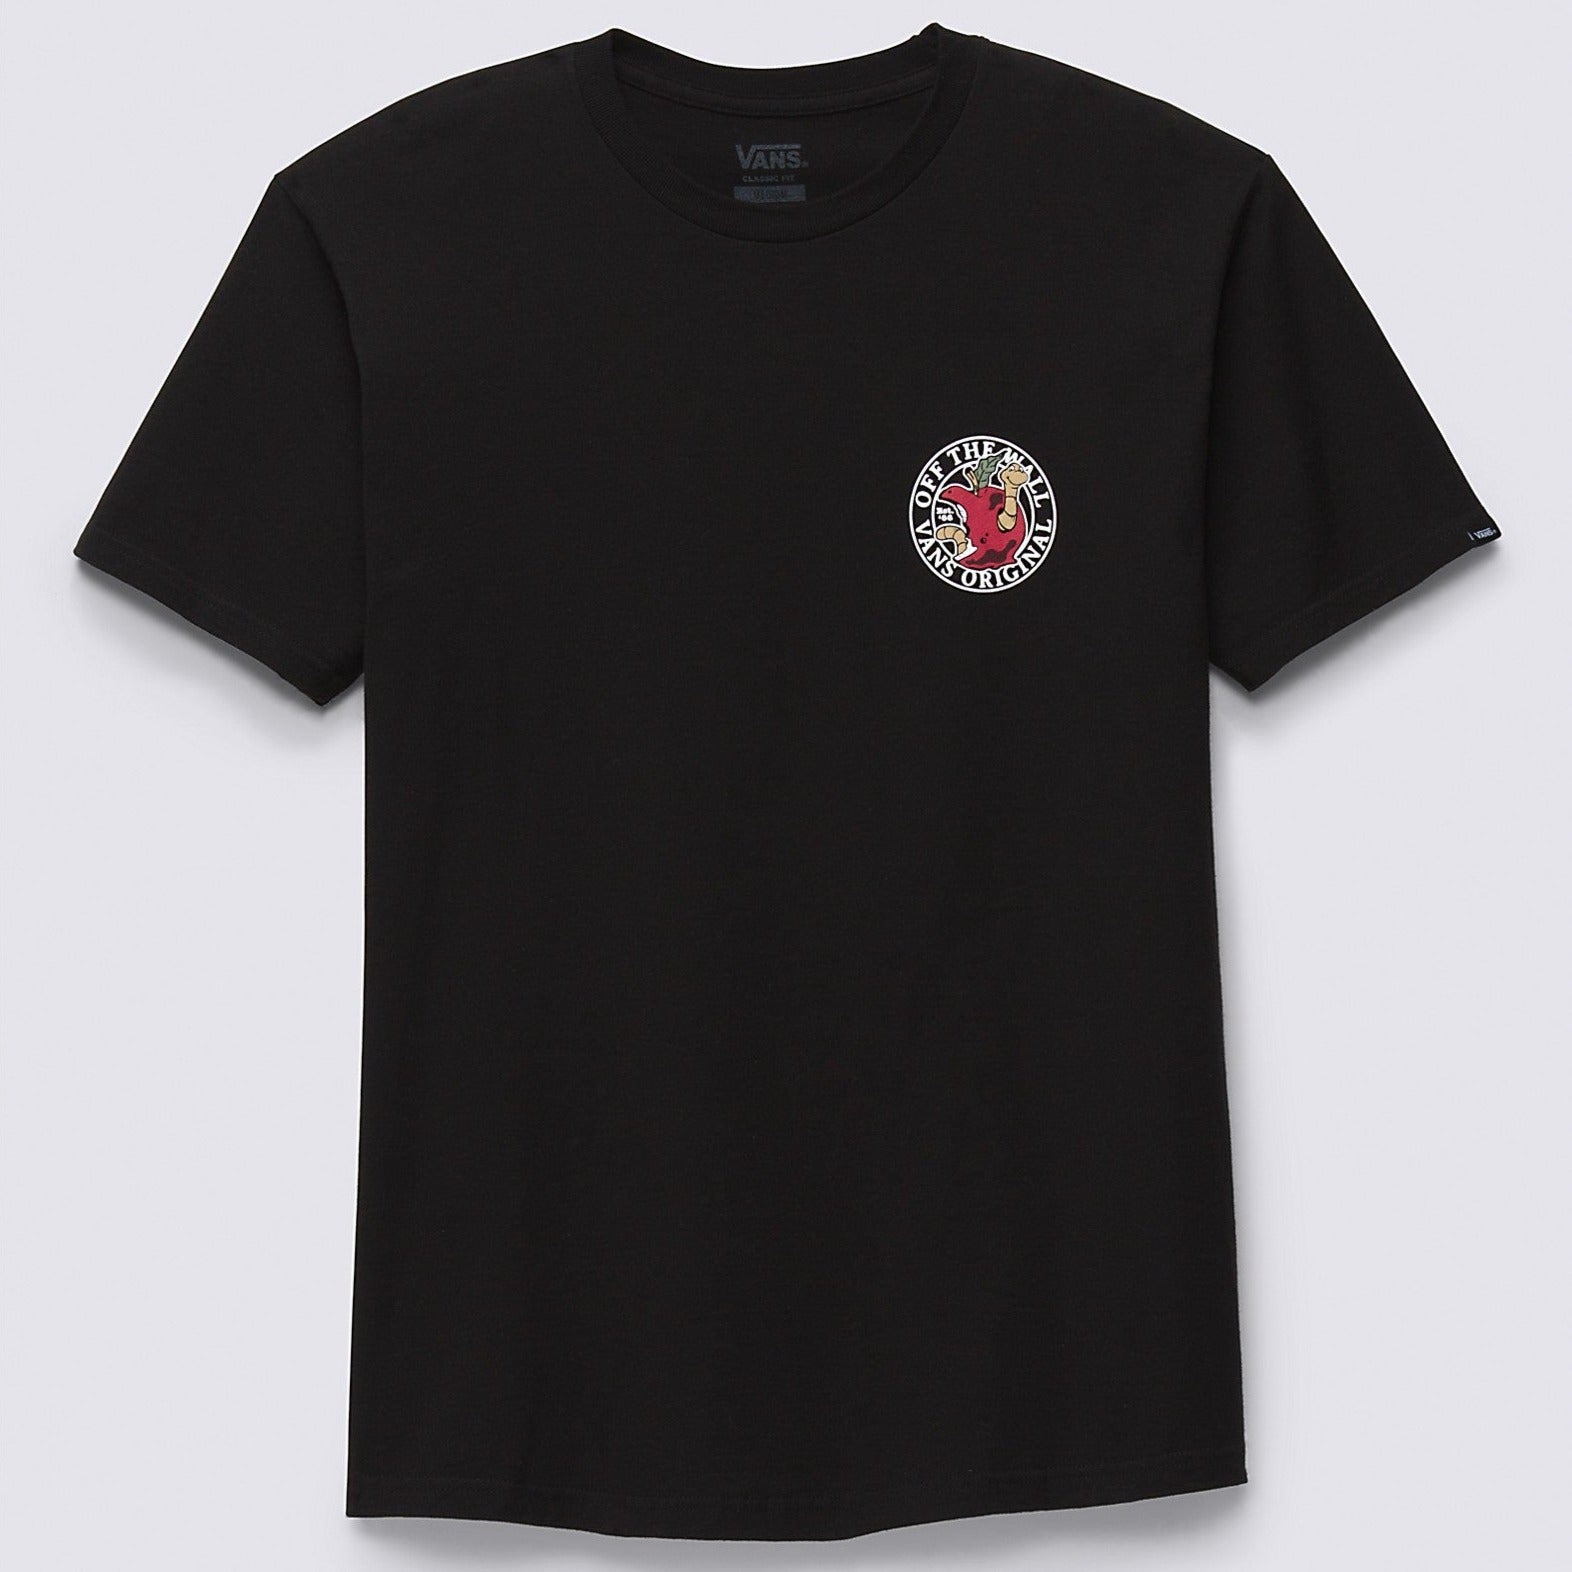 Black Core Vans T-Shirt